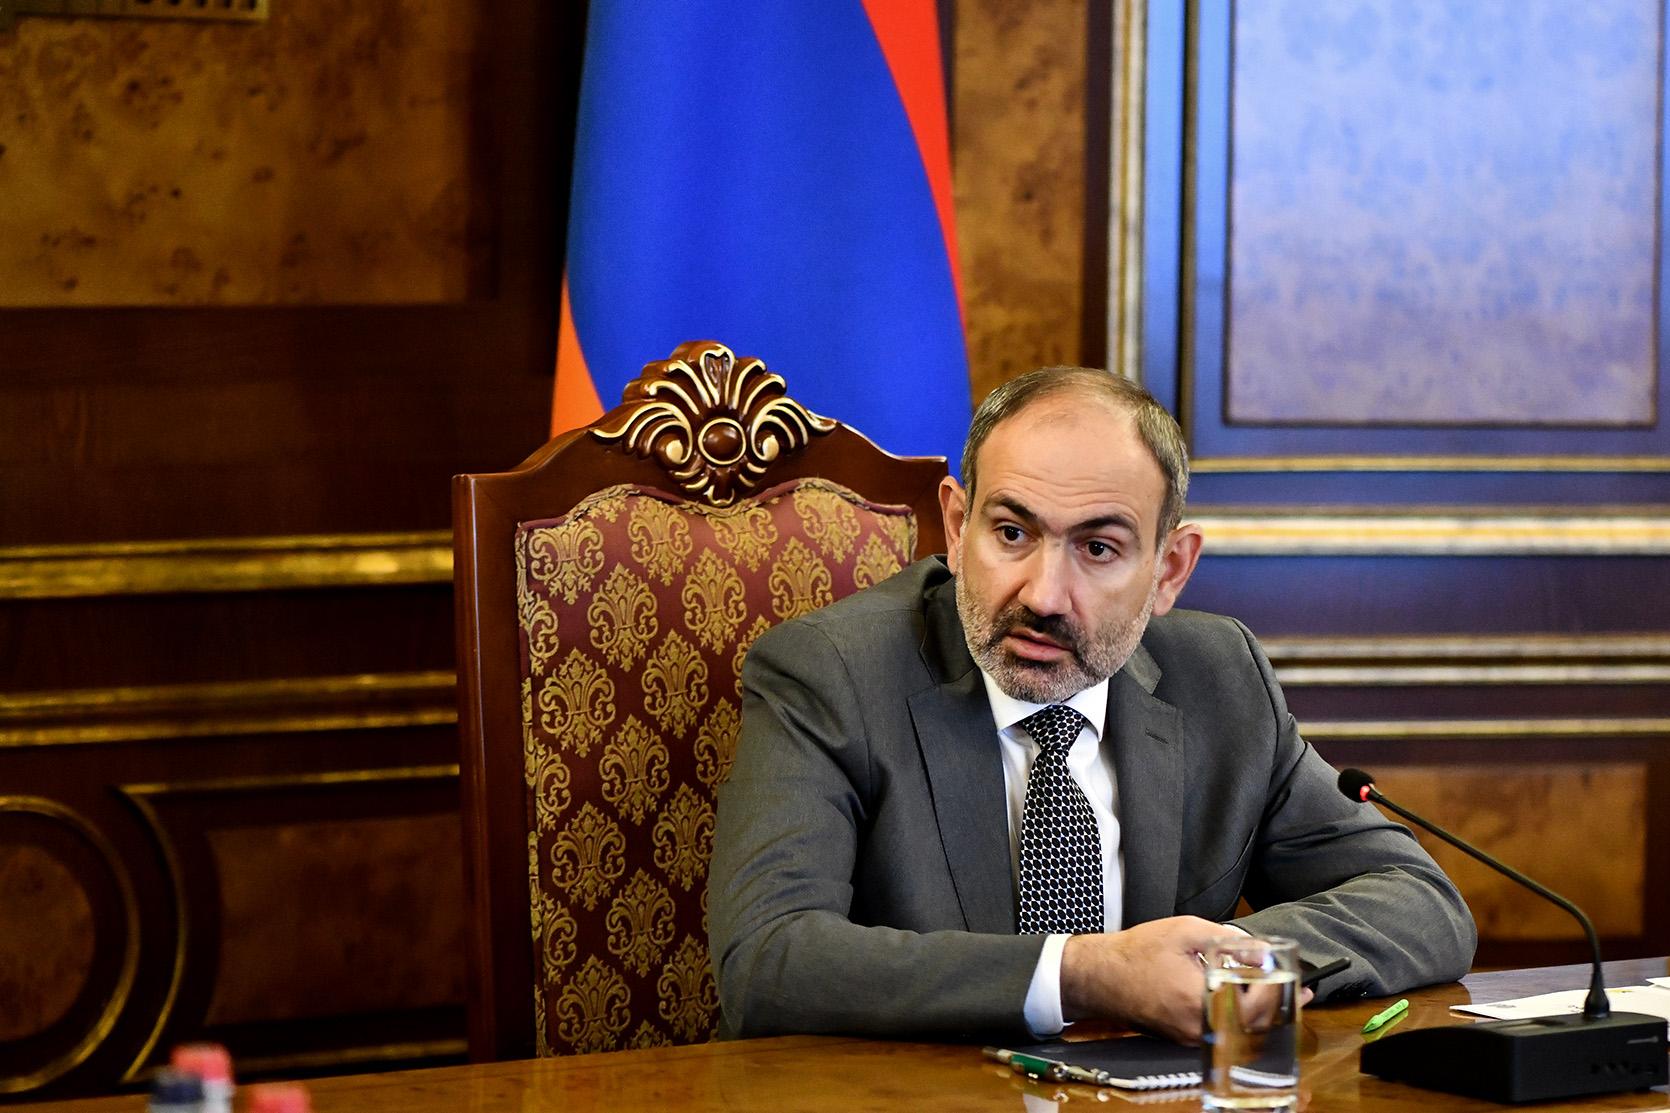 Пашинян: Надо закрыть постыдную страницу незаконного усыновления детей в Армении